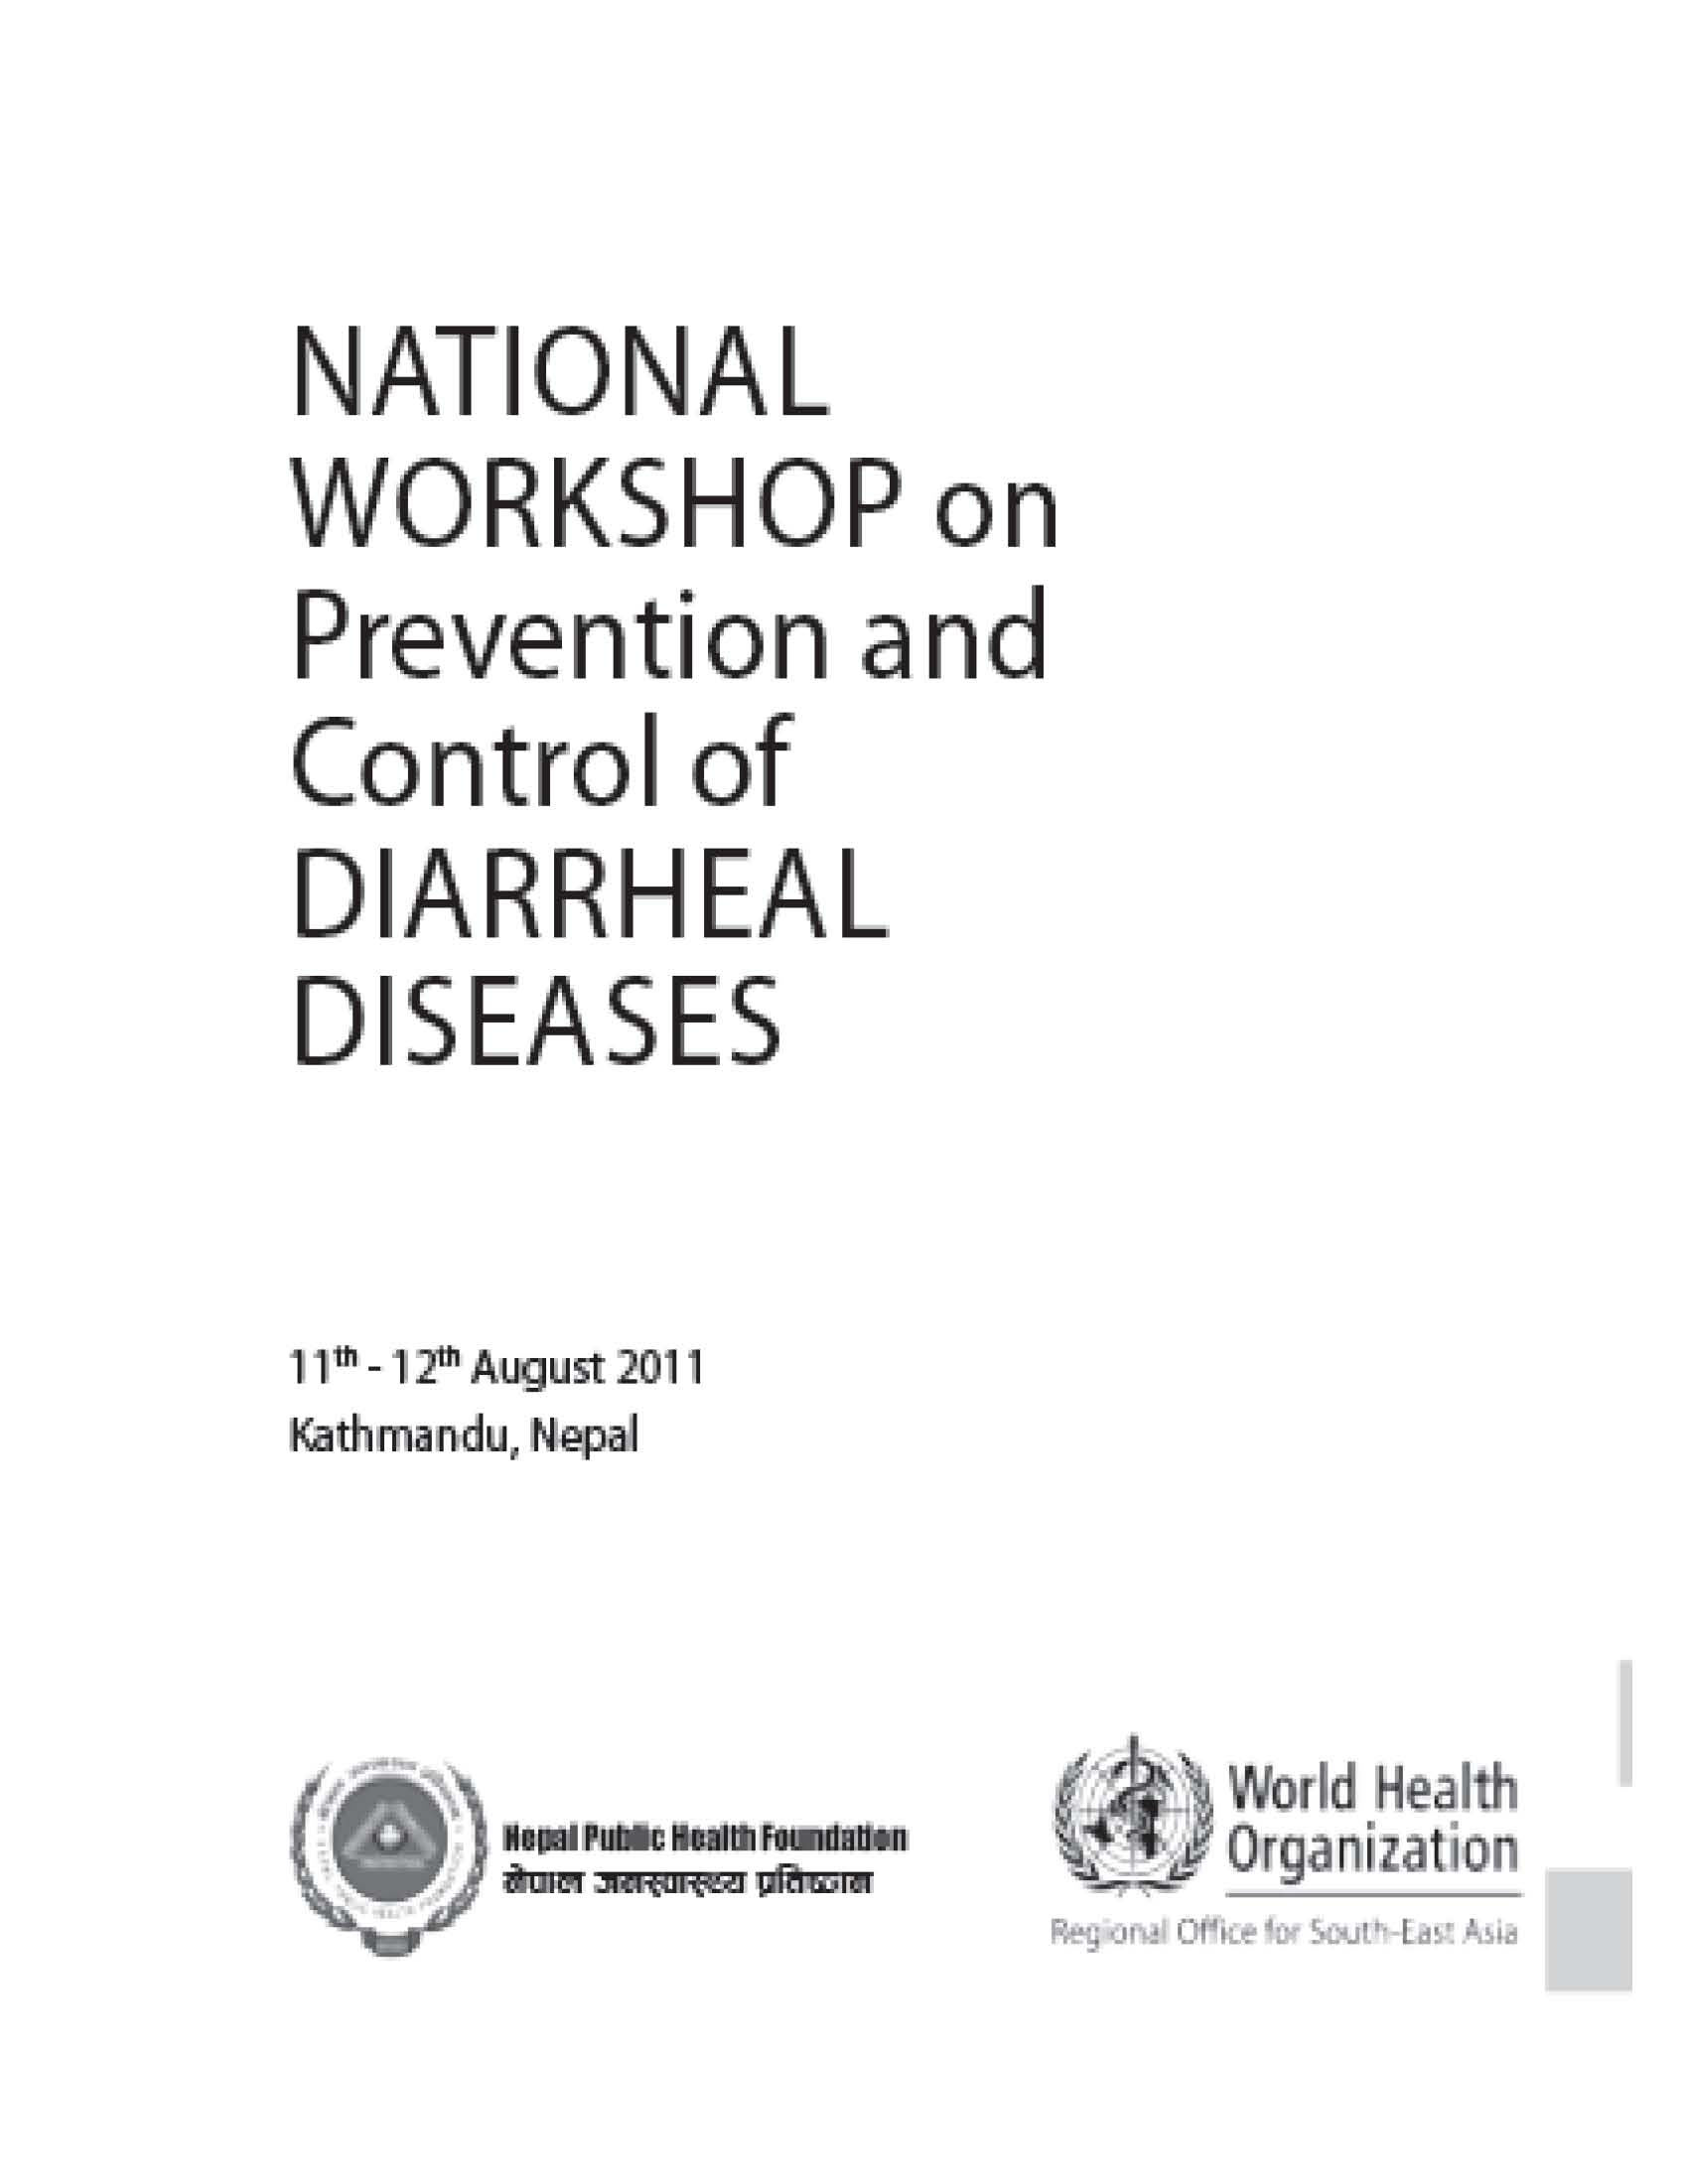 National Workshop On Diarrheal Diseases